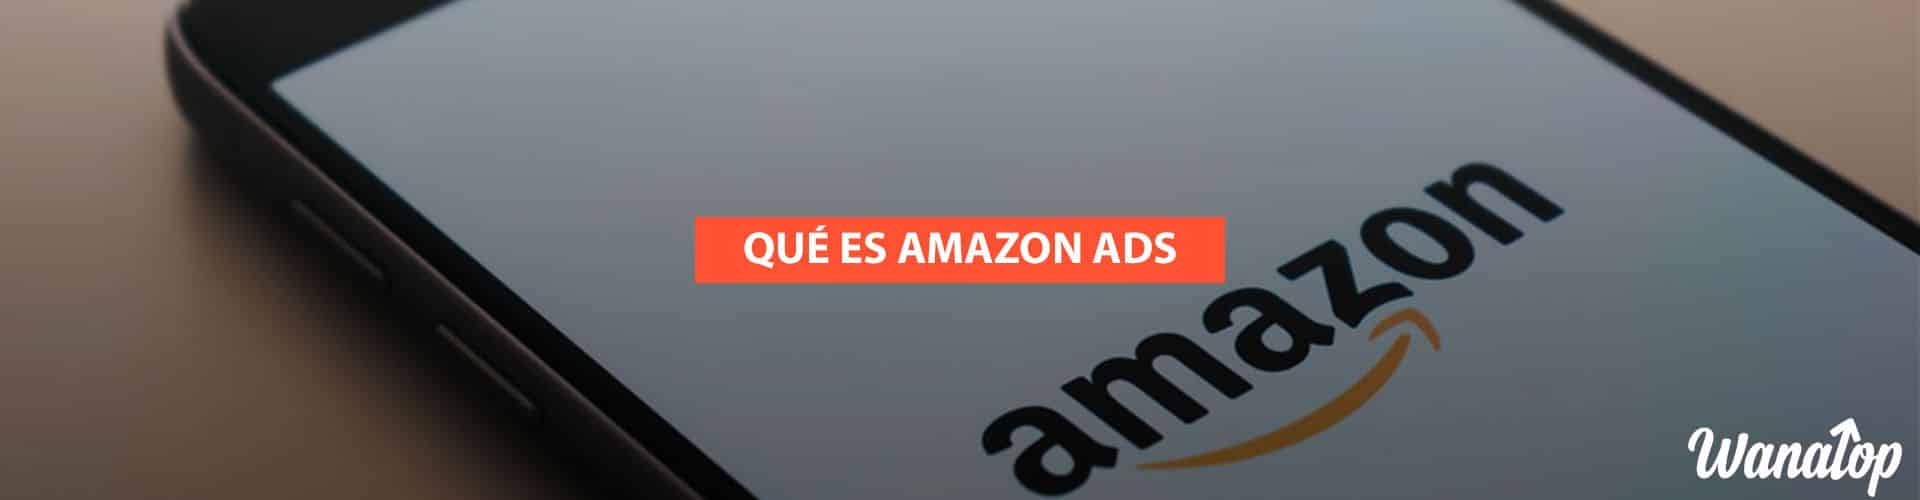 Amazon Advertising: ¿Qué es y cómo funciona?